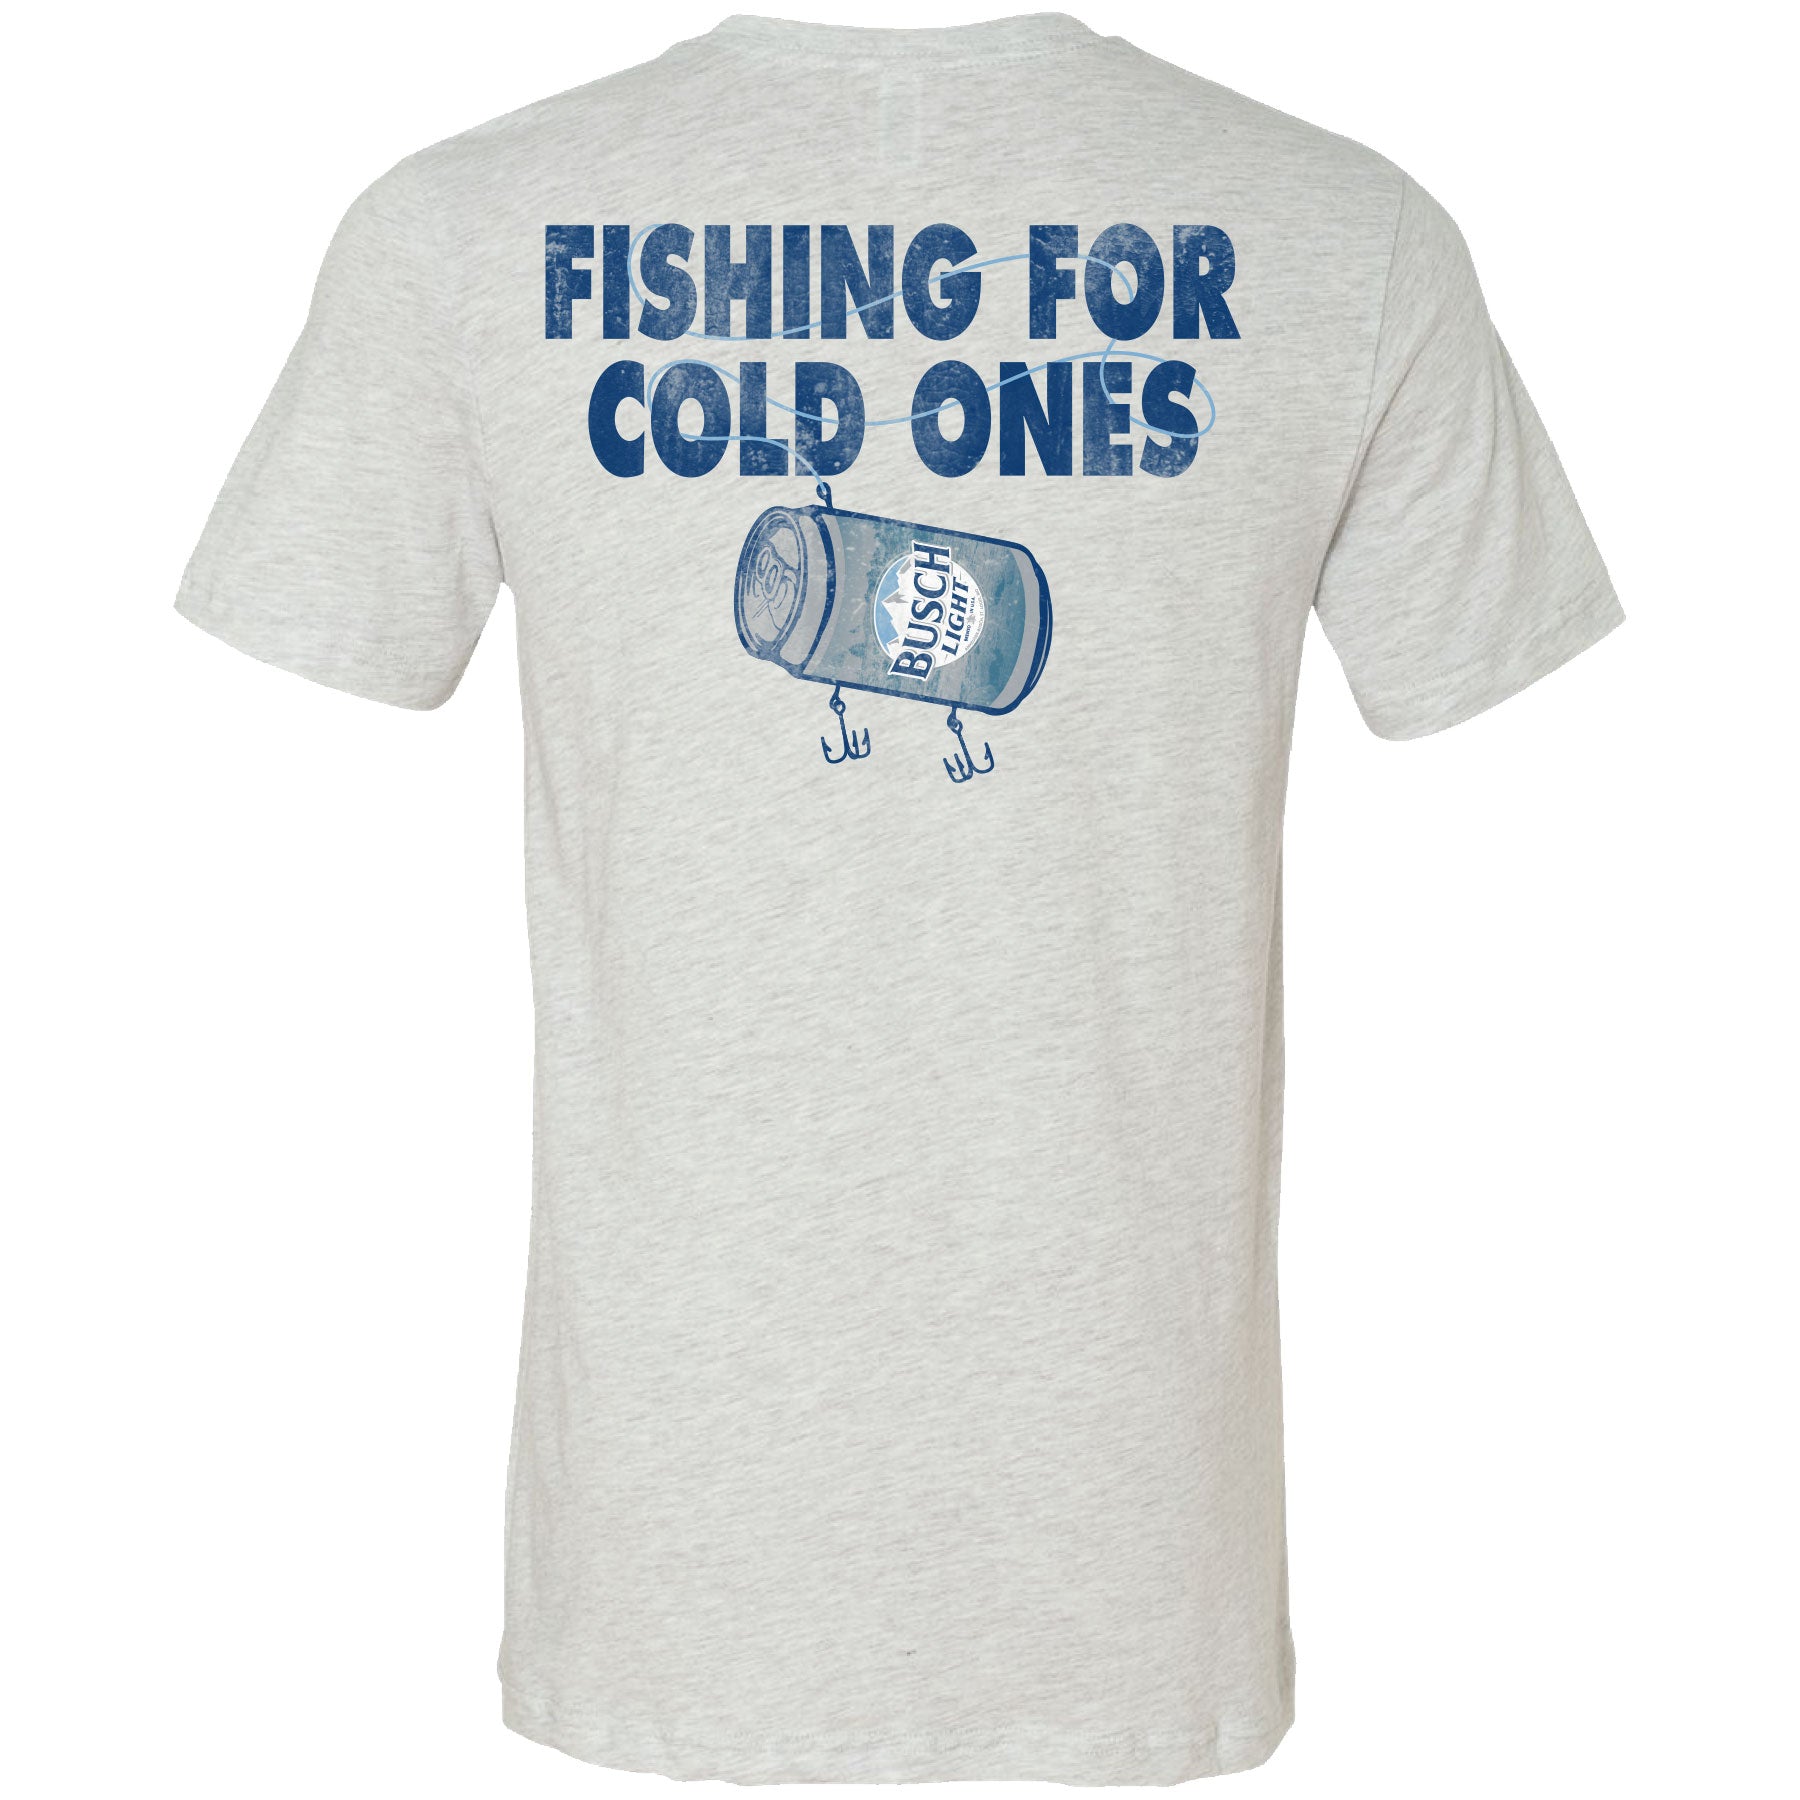 Busch Light Fishing Largemouth Bass T-Shirt